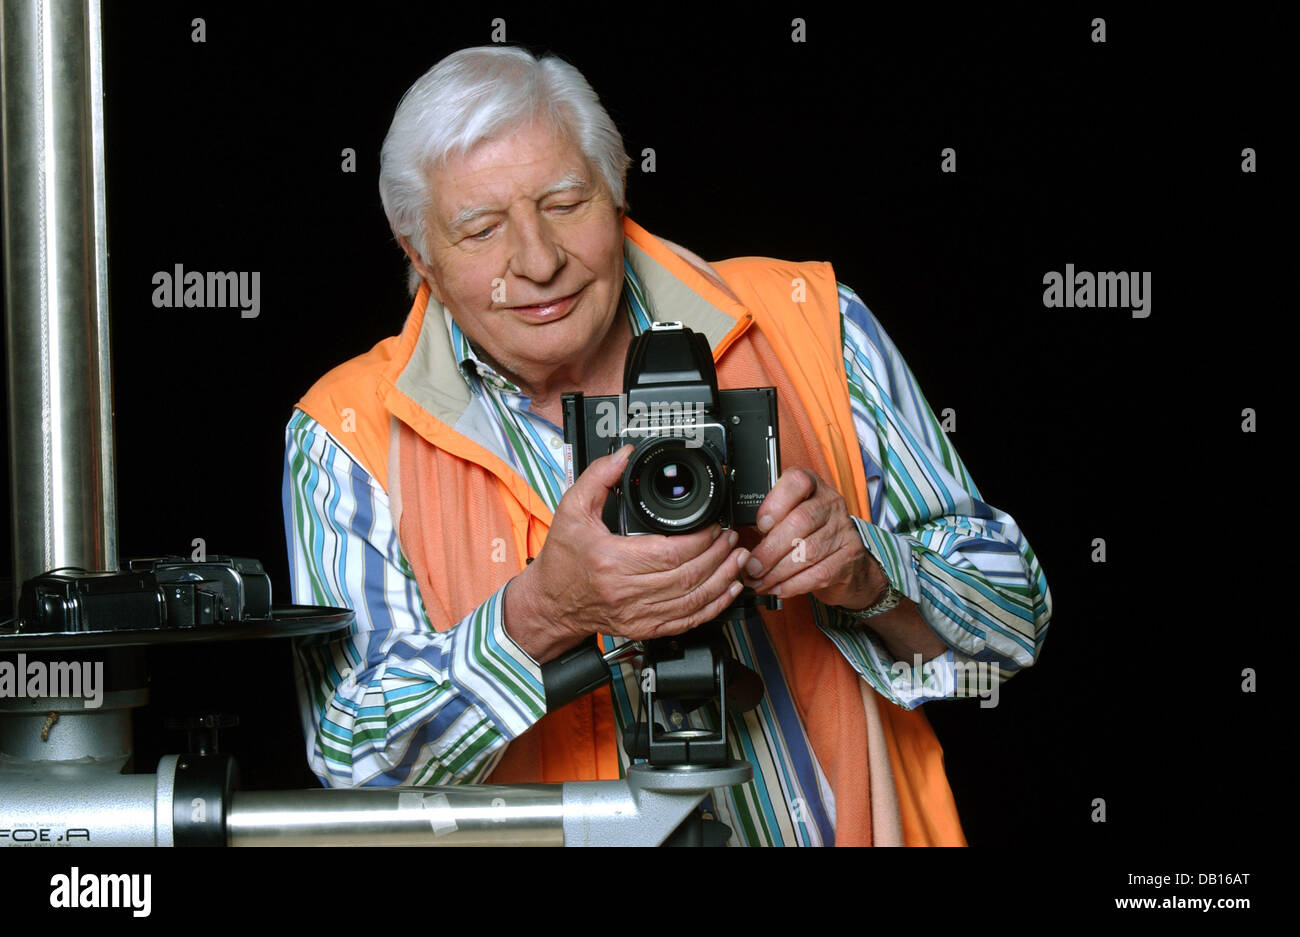 Fotógrafo documental, Filmer y coleccionista de arte Gunter Sachs plantea  con una cámara en su estudio en Munich, Alemania, el 2 de noviembre de  2007. Sachs es el hijo más joven del